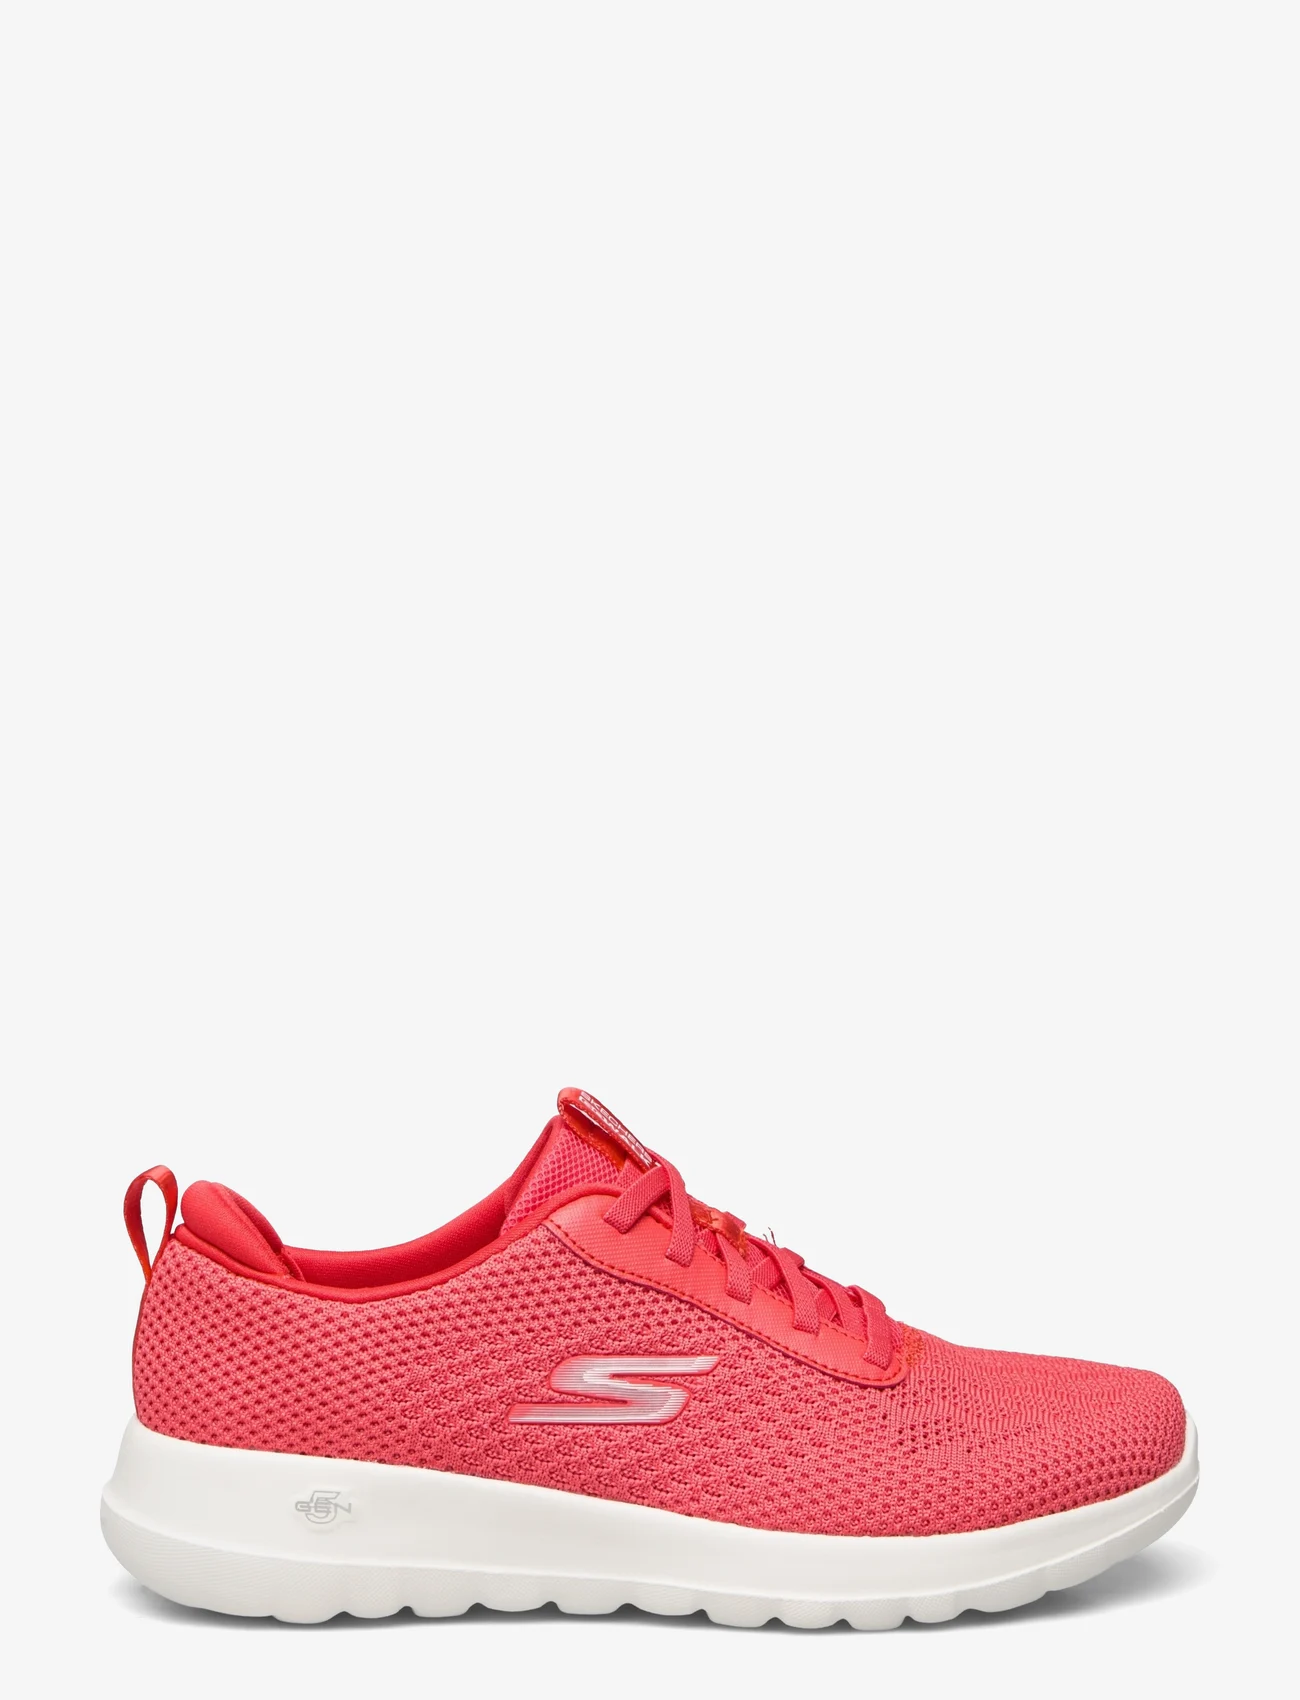 Skechers - Womens Go Walk Joy - Wonderful Spring - low top sneakers - red red - 1